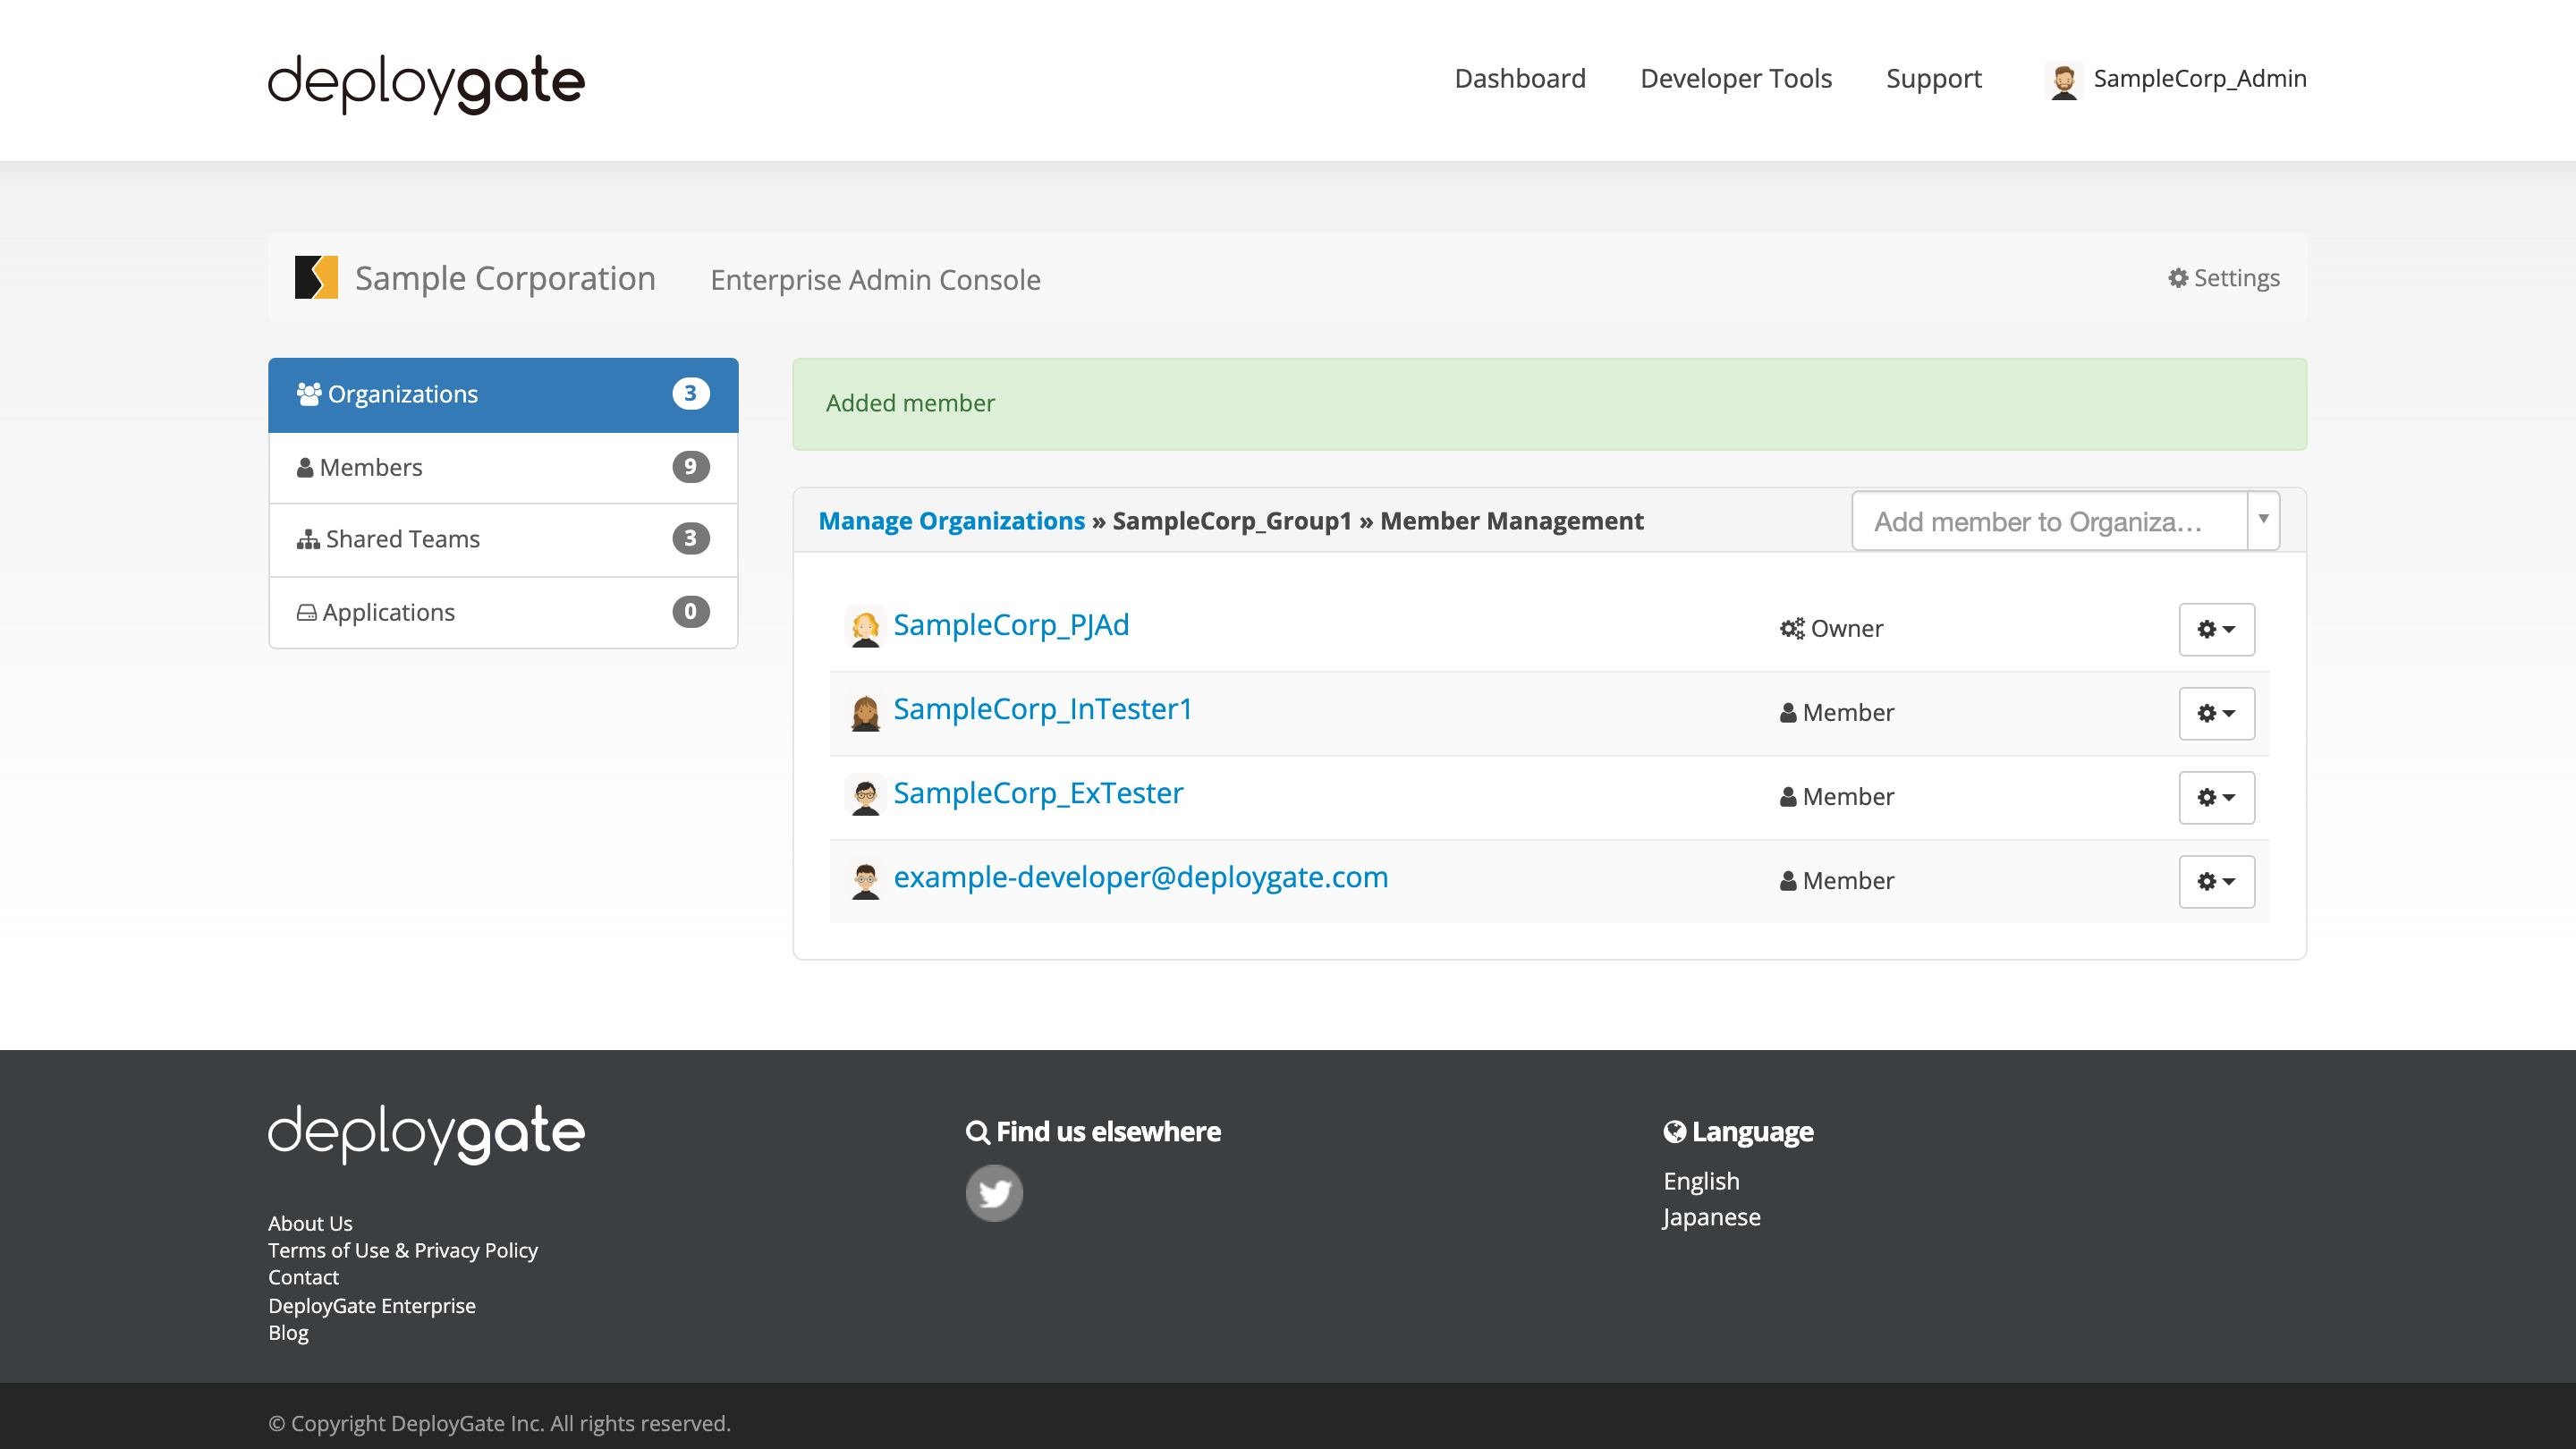 ScreenShot of Enterprise Add Member